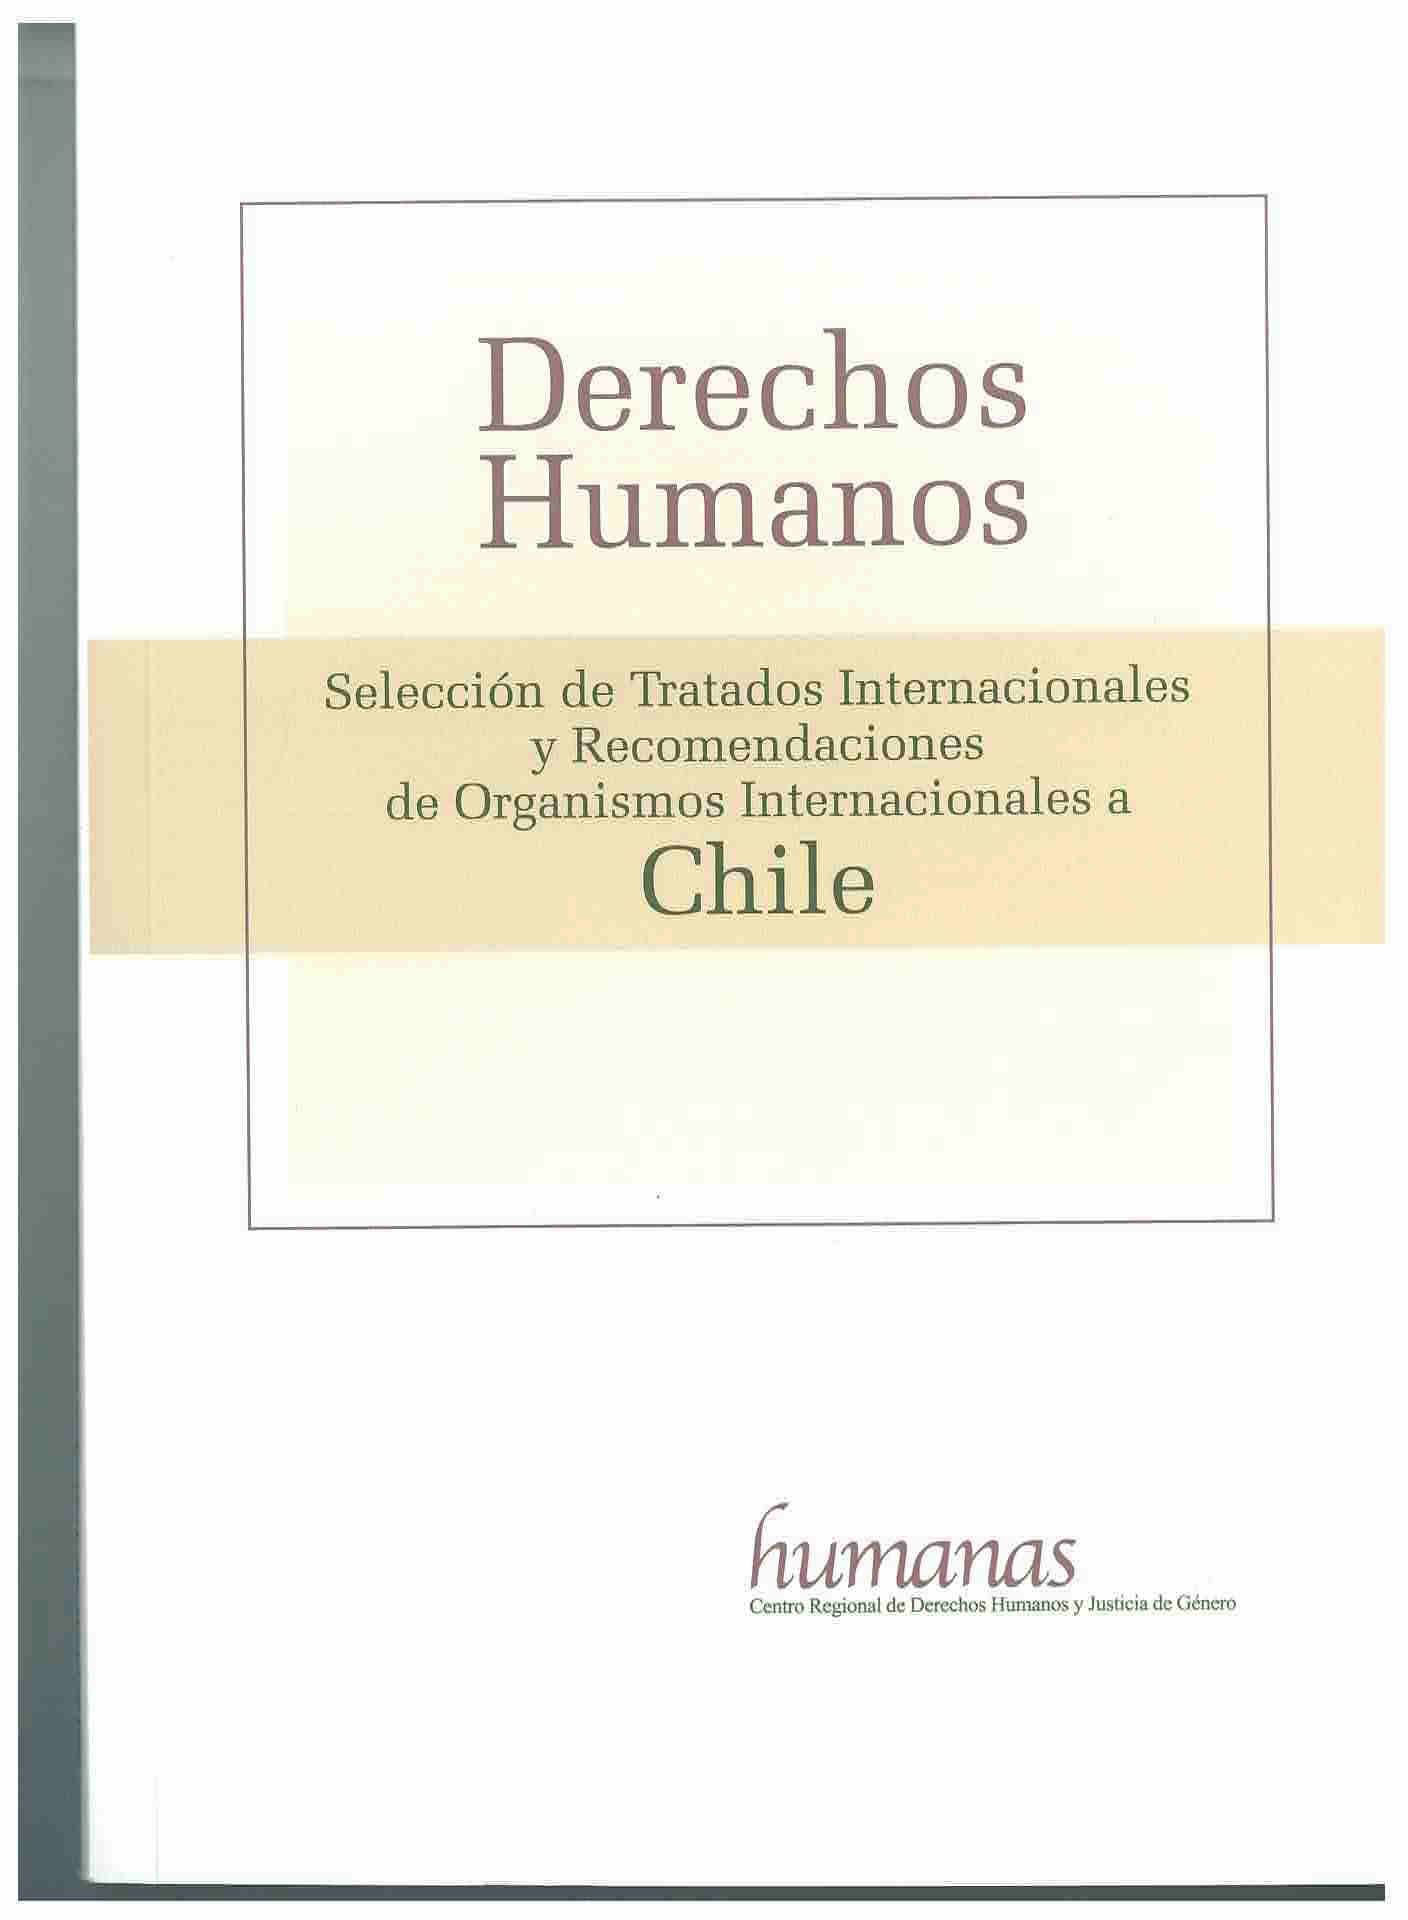 Derechos humanos : selección de tratados internacionales y recomendaciones de organismos internacionales a Chile